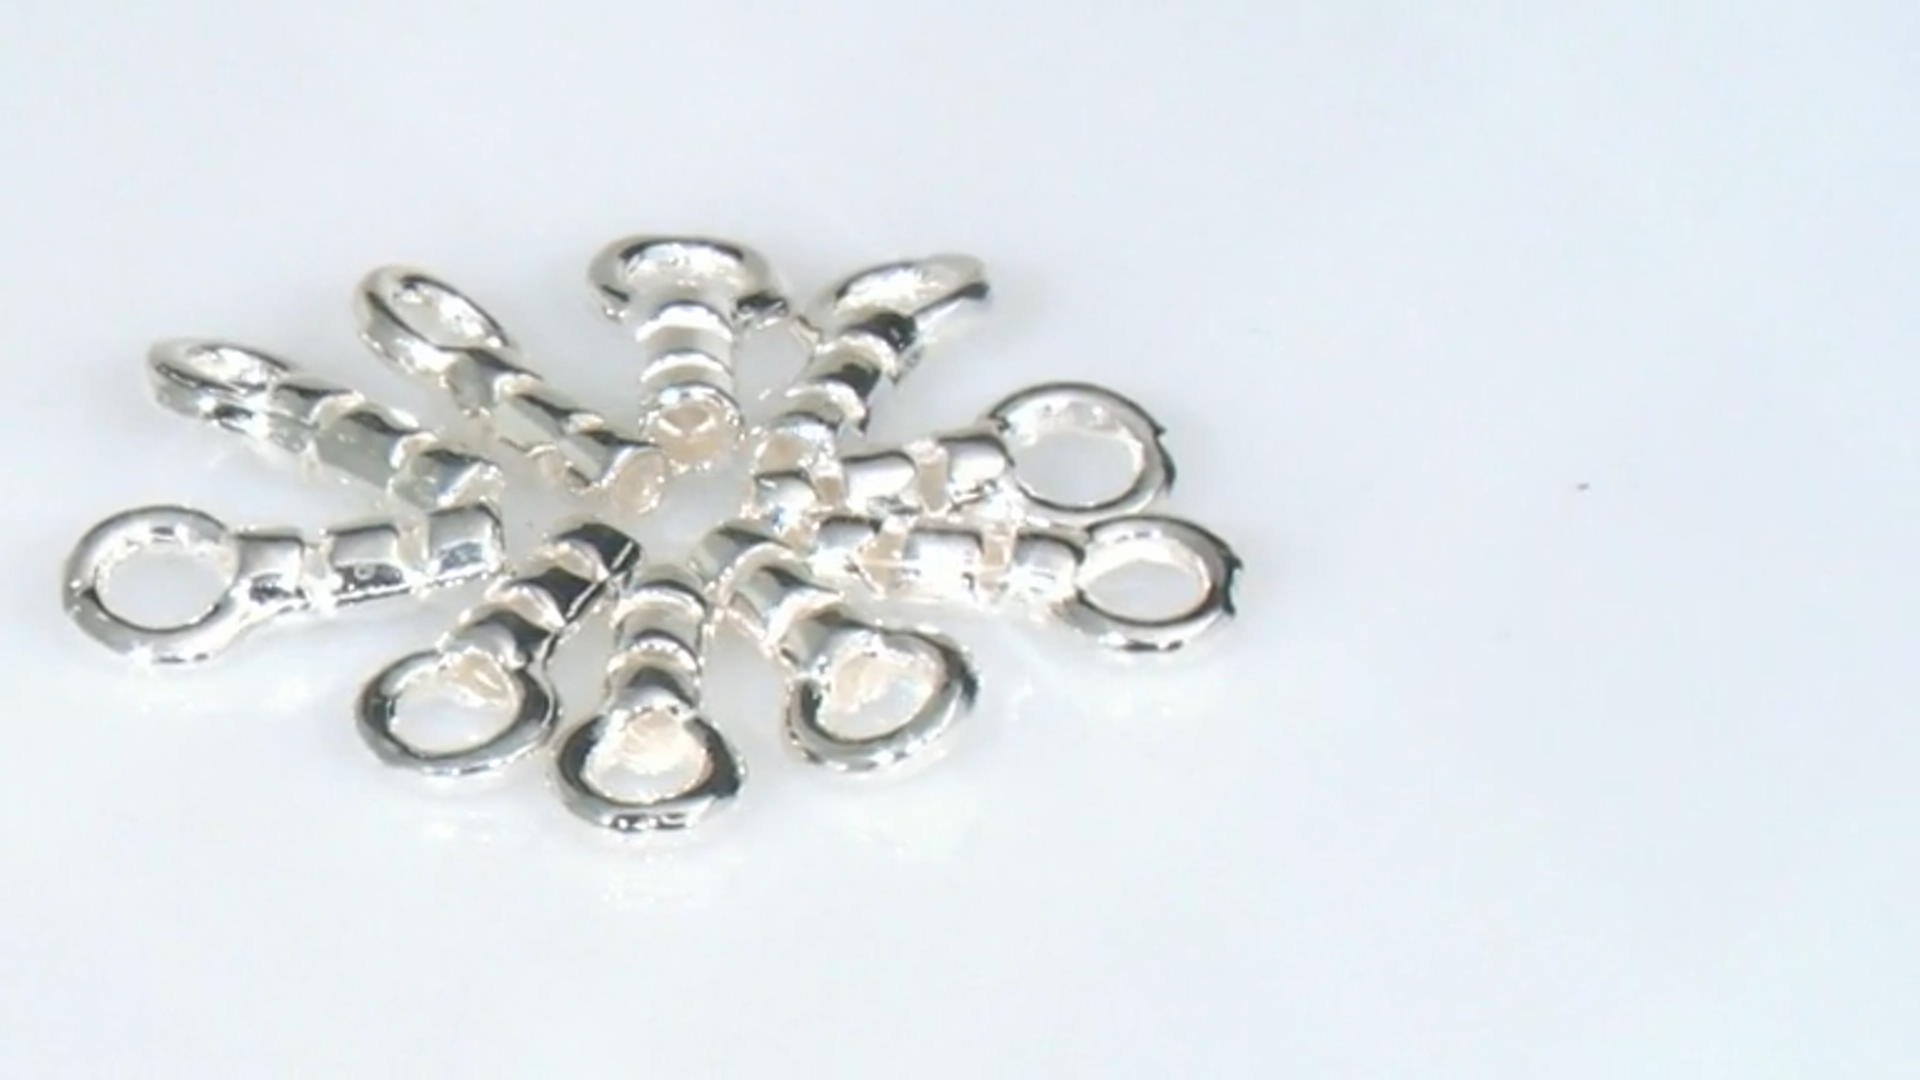 Mandrel Ring Smooth 1-16 - Thunderbird Supply Company - Jewelry